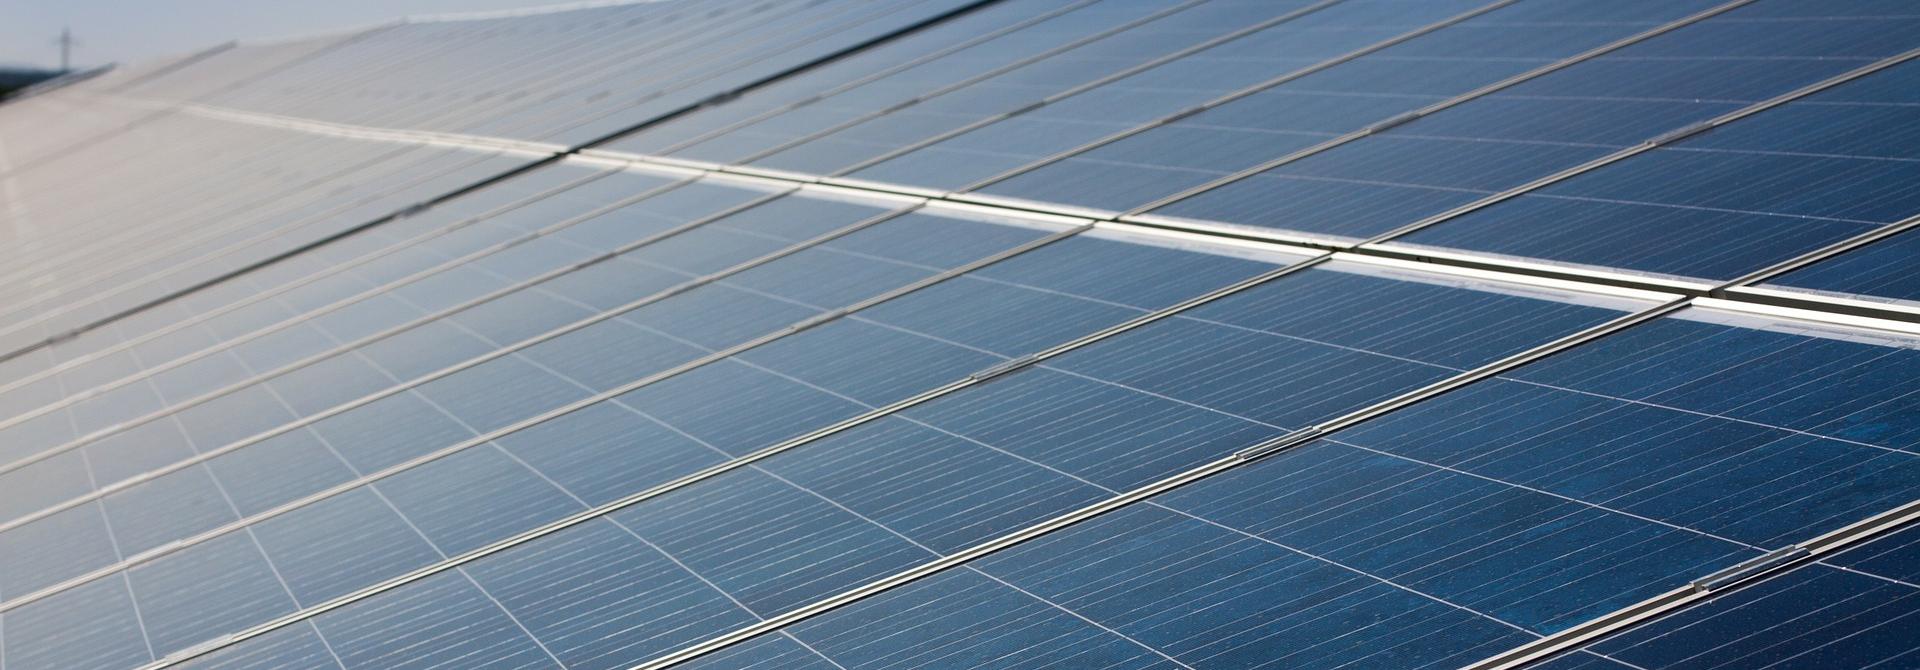 Incentivi fotovoltaico, il decreto FER 1 è pronto